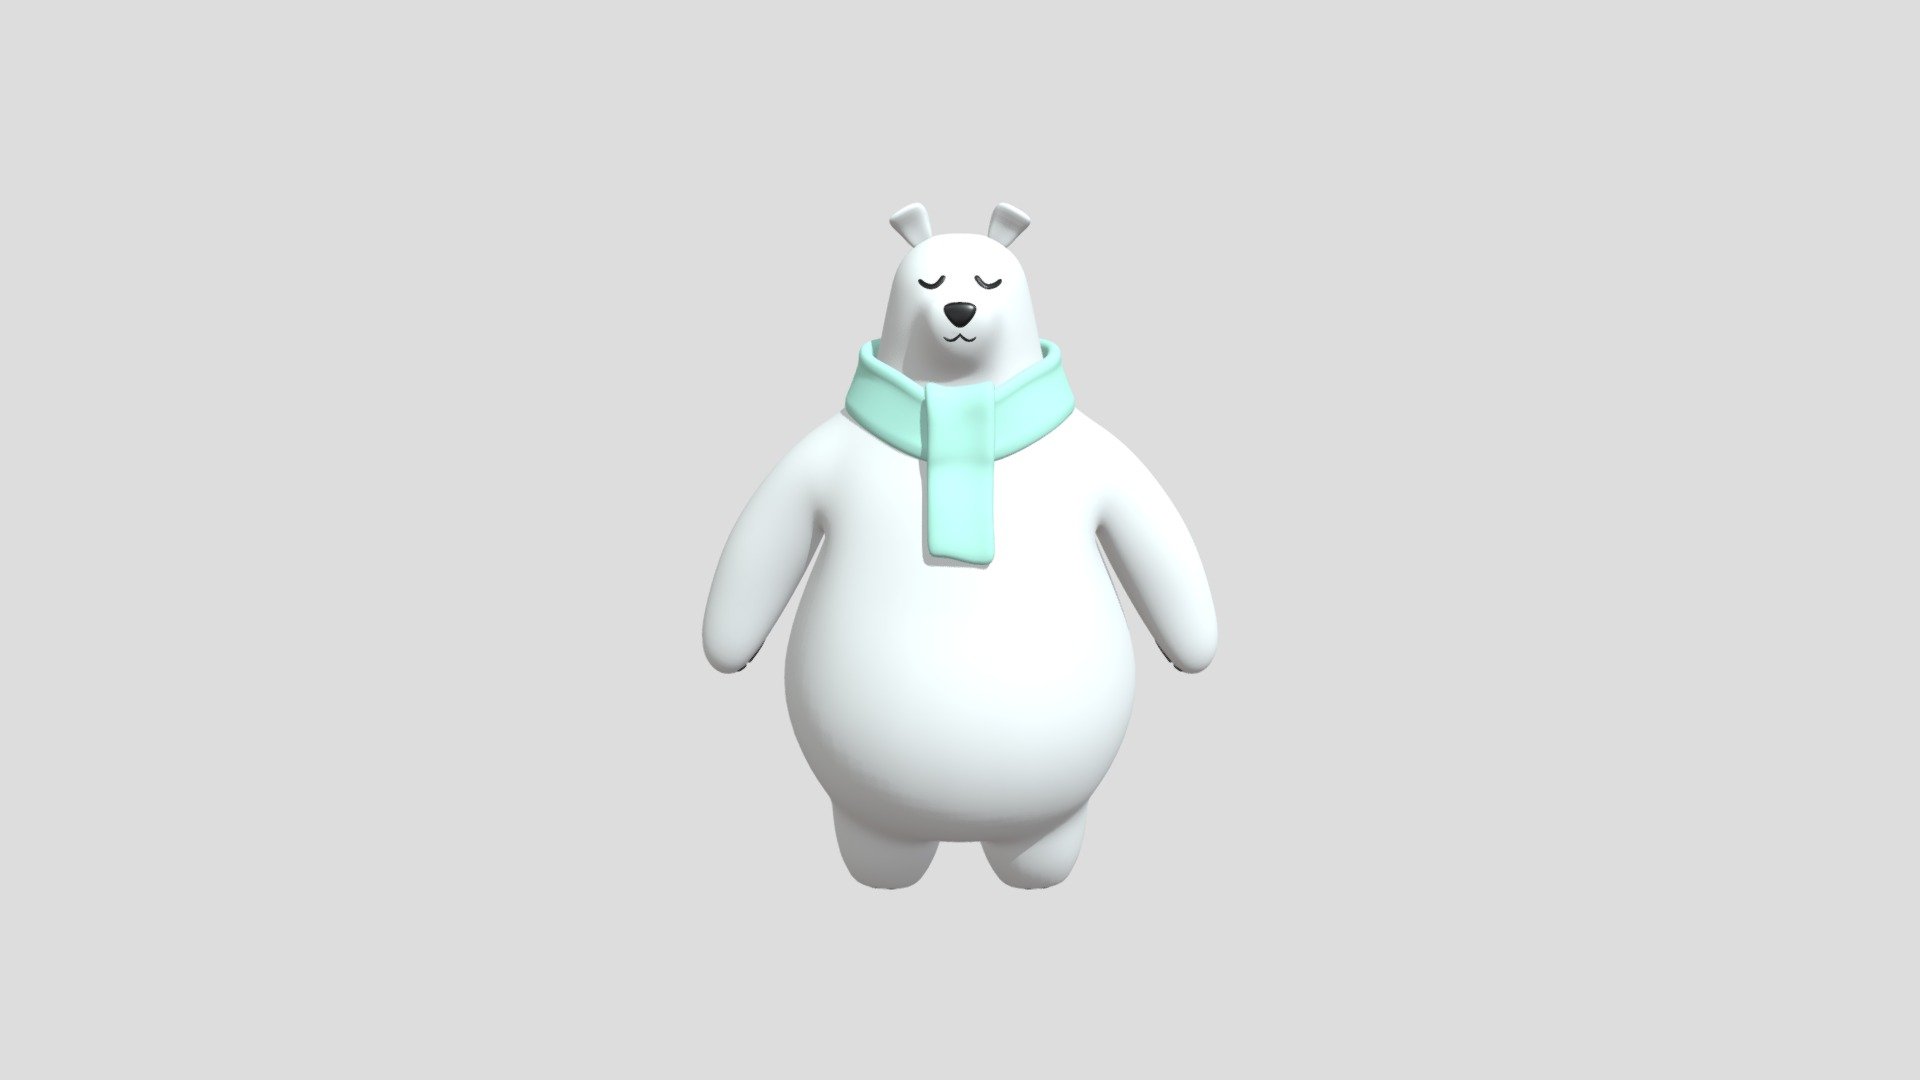 First pass of EiffelArt's polar bear.
Follow Matt at https://www.twitch.tv/eiffelart and https://twitter.com/eiffelart - Matt's Polar Bear - 3D model by joberg 3d model